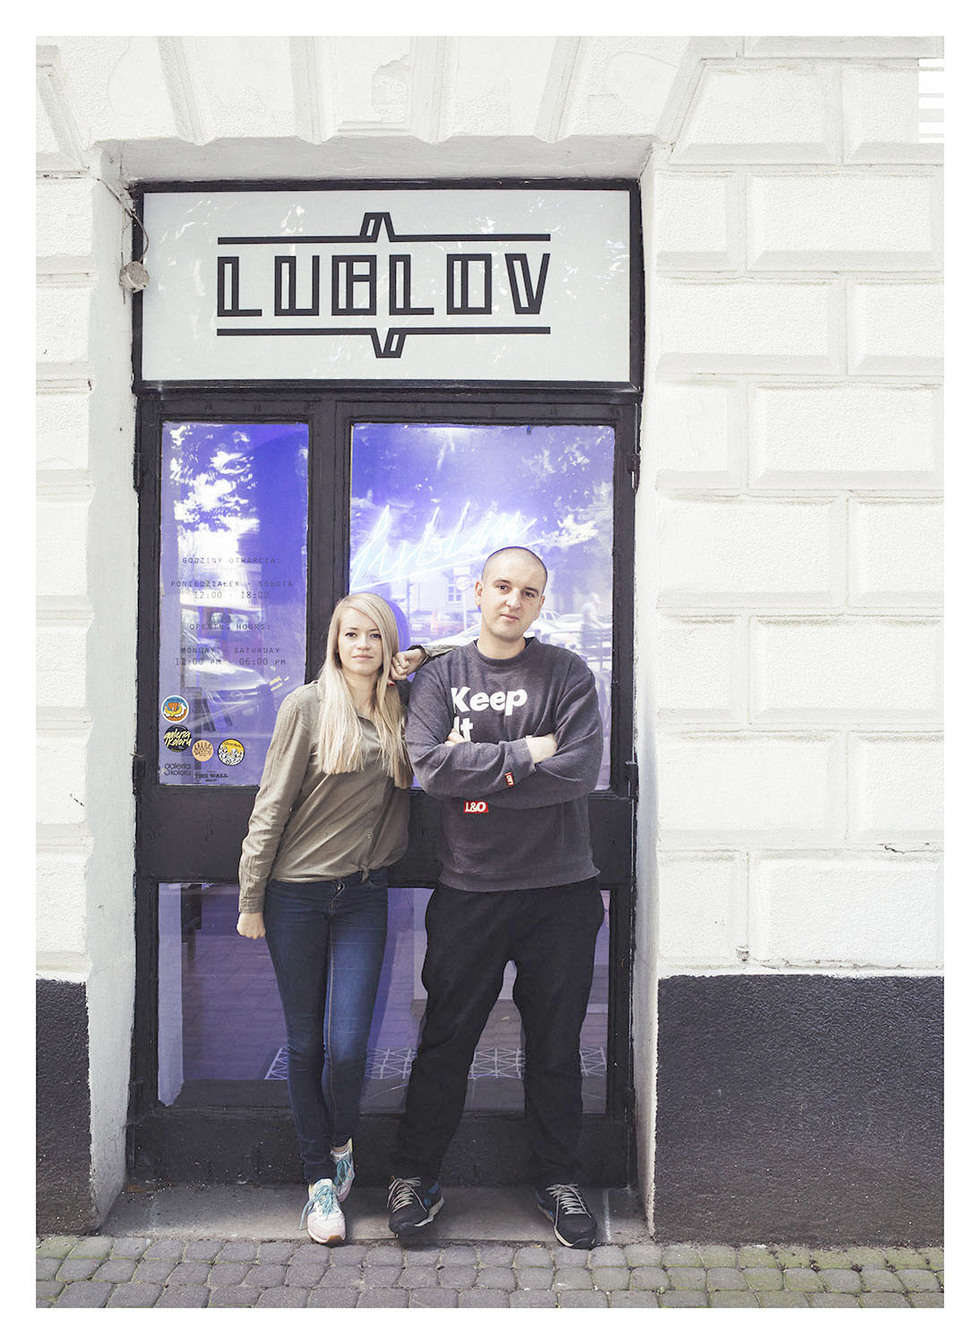  <p>Cezary Hunkiewicz i Anna Bakiera - tw&oacute;rcy Lublov - concept store i sztuki (także użytkowej) związanej z Lublinem. Lublov to miejsce, w kt&oacute;rym prezentowani są miejscowi artyści i tw&oacute;rcy zafascynowani Lublinem.</p>